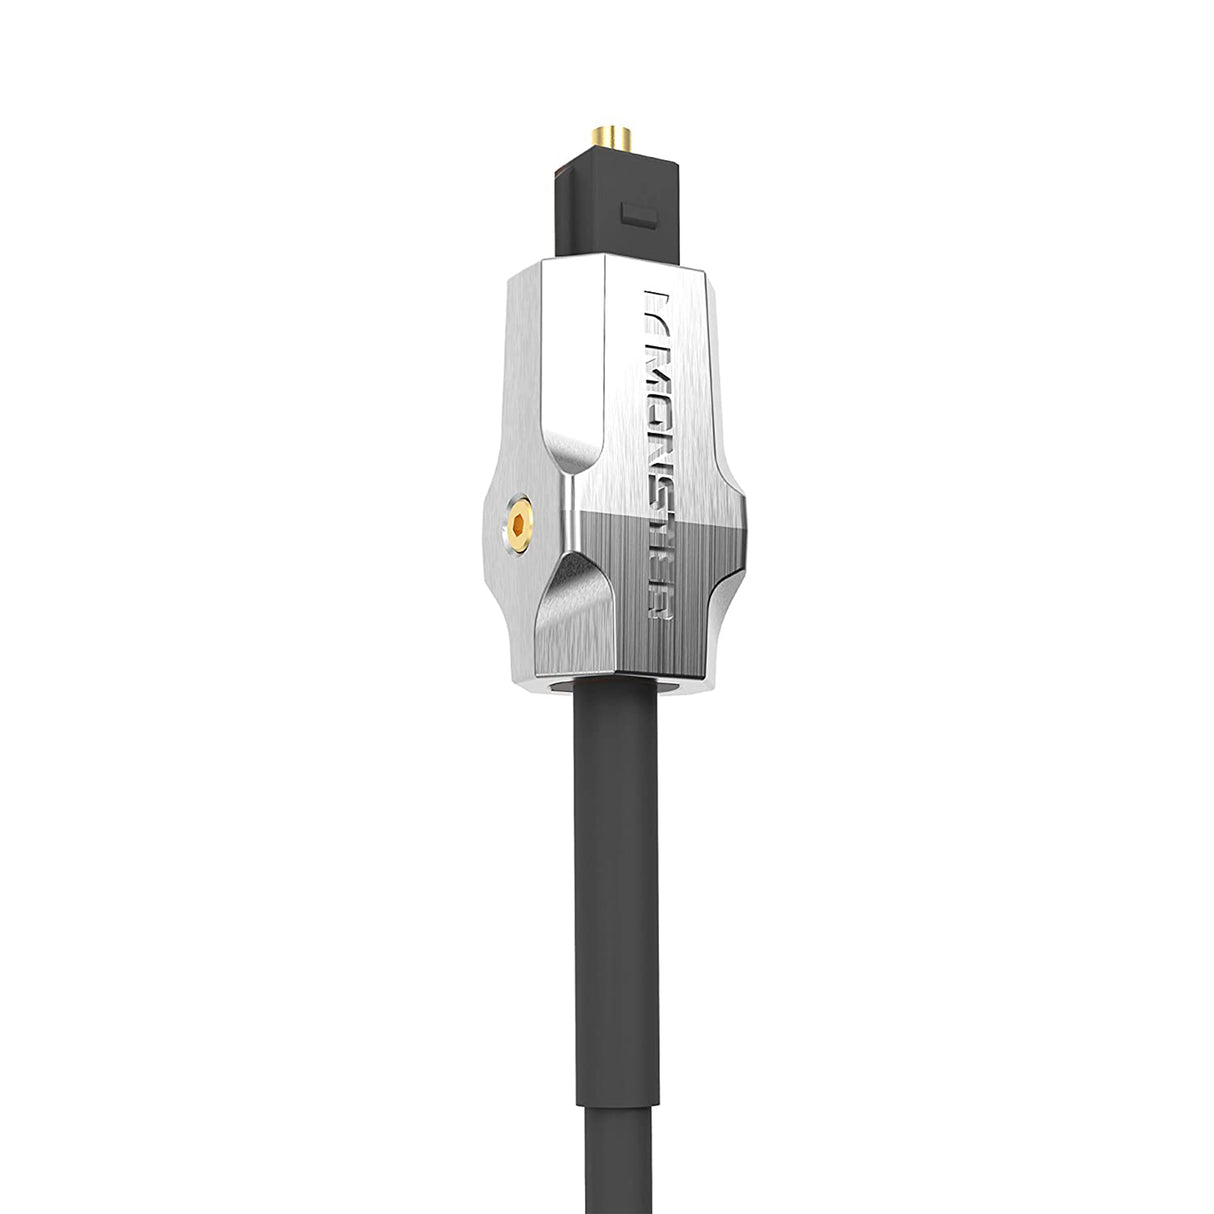 Cable Optico para audio 5 metros Thonet & Vander